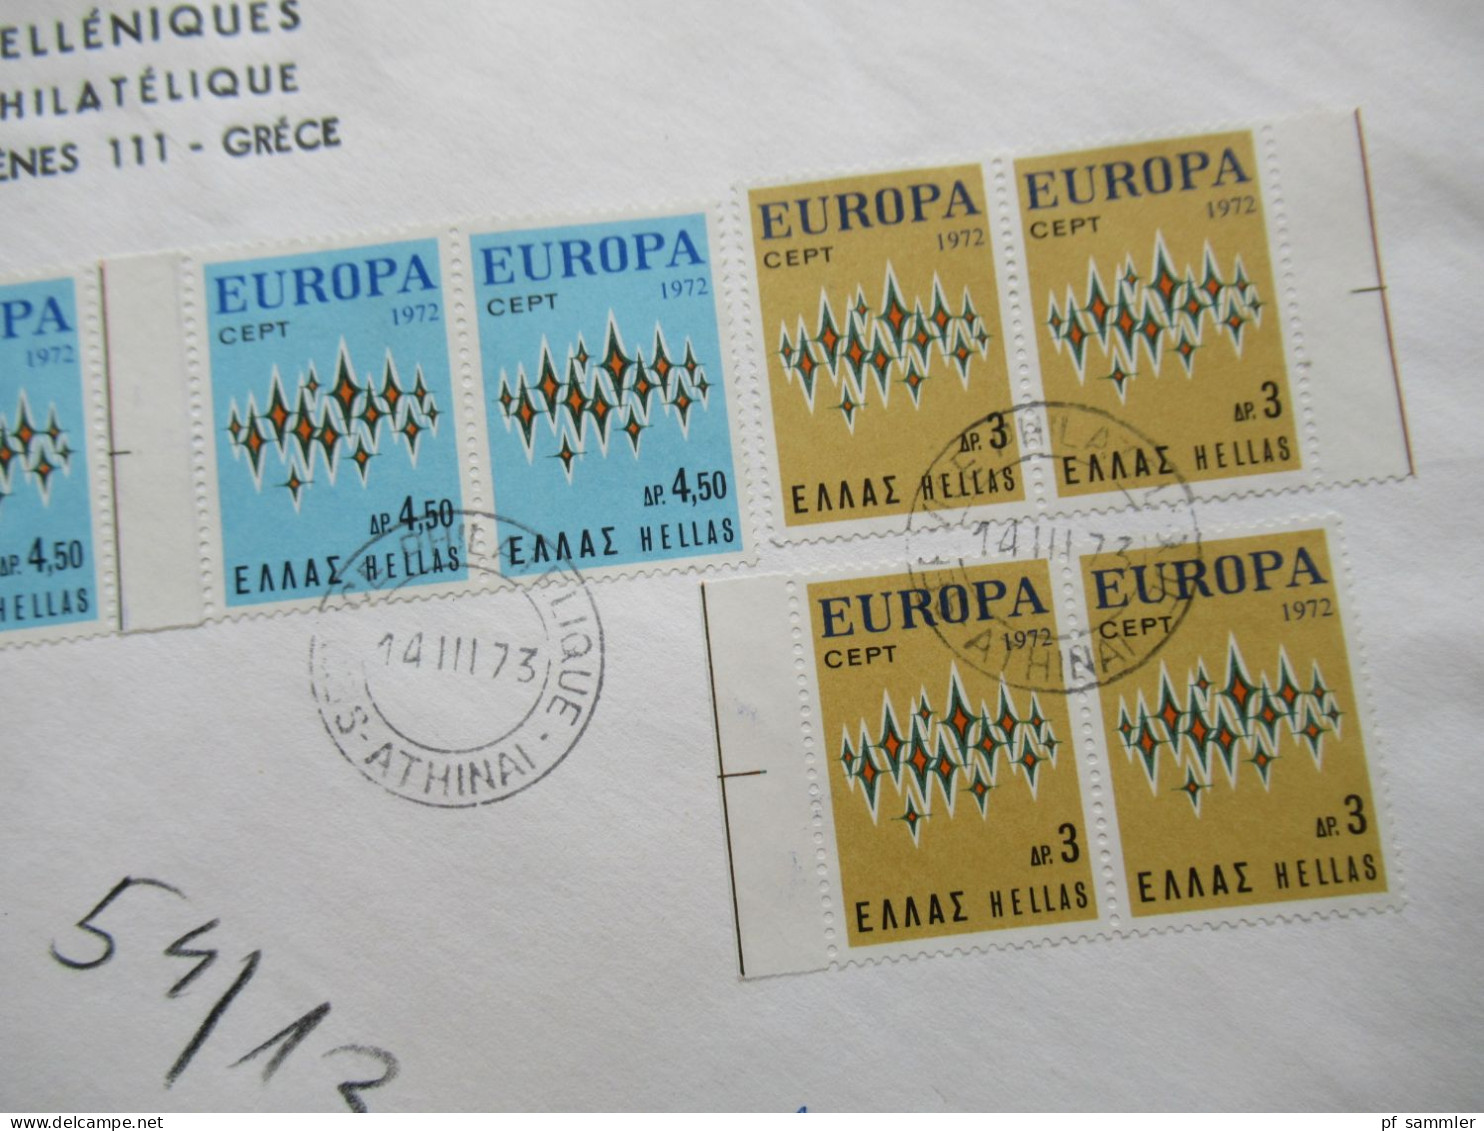 Griechenland Europa Cept 1972 Einschreiben Athinai Postes Helleniques Service Philatelique Nach Bamberg Gesendet - Briefe U. Dokumente